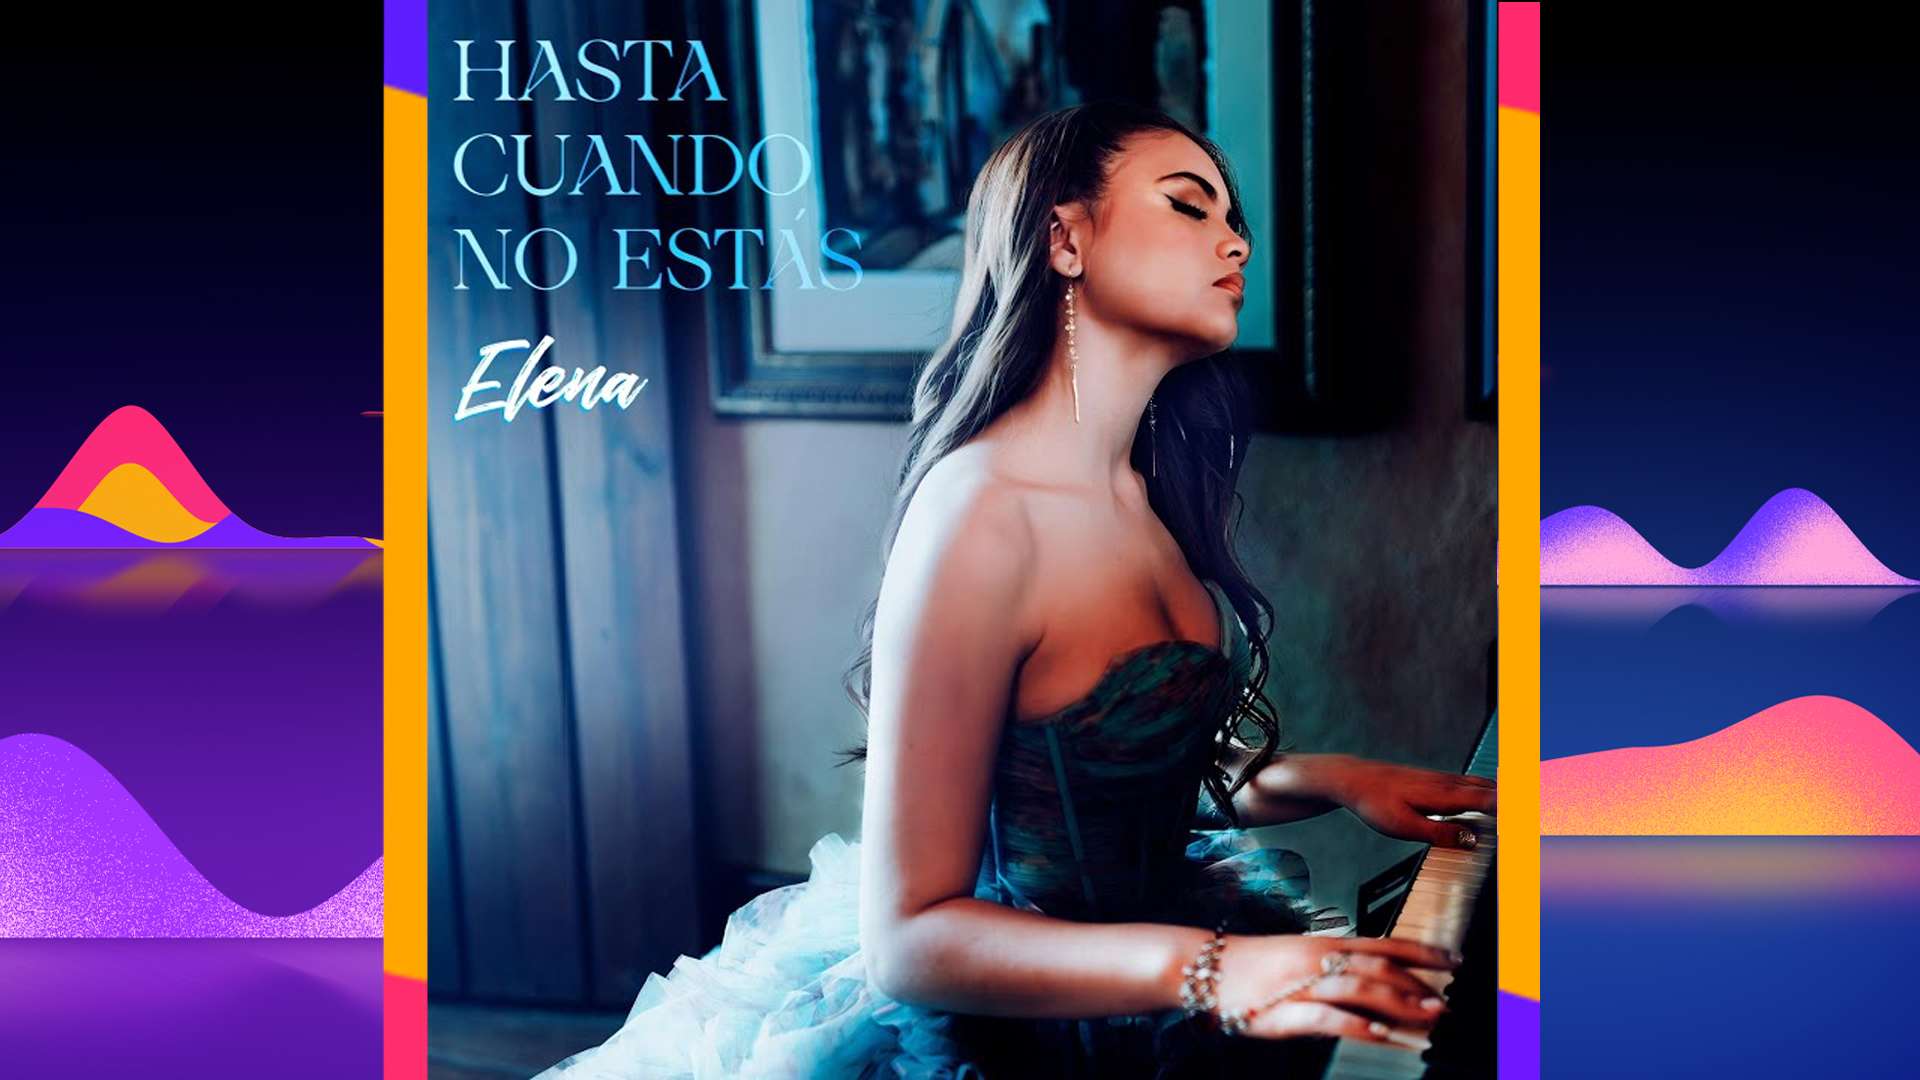 ELENA presenta su nuevo sencillo  “HASTA CUANDO NO ESTAS”